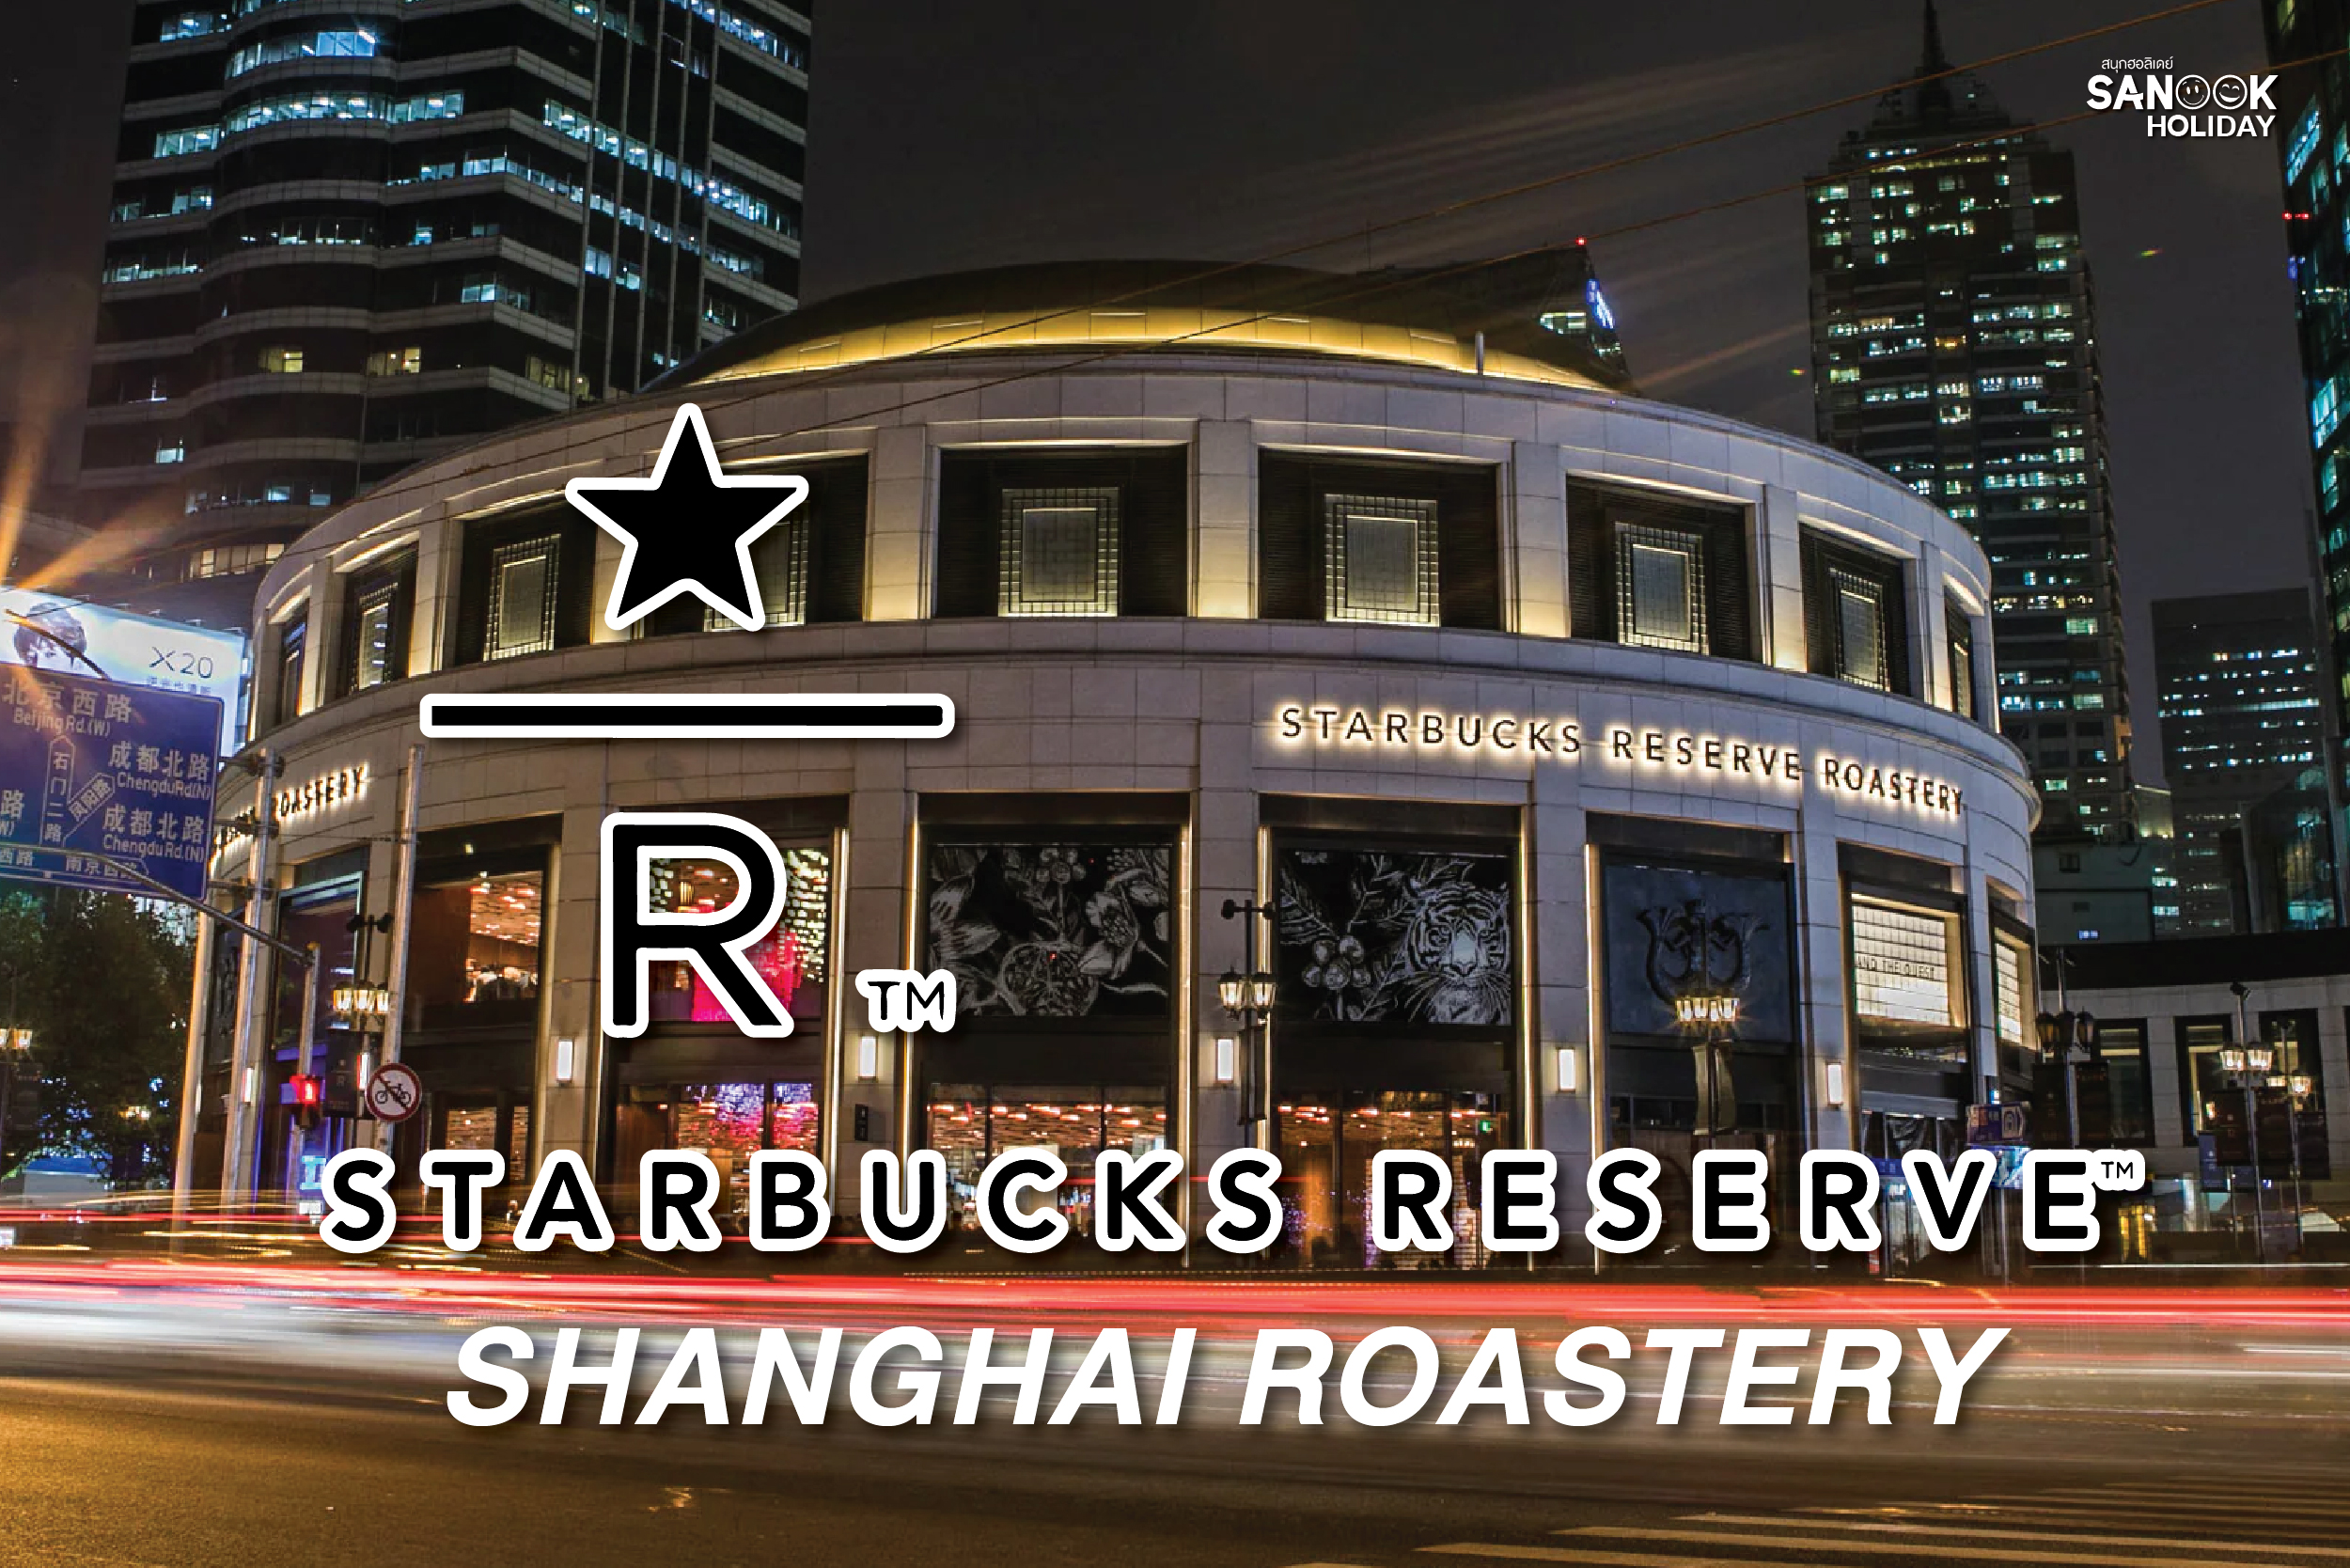 Starbucks reserve shanghai